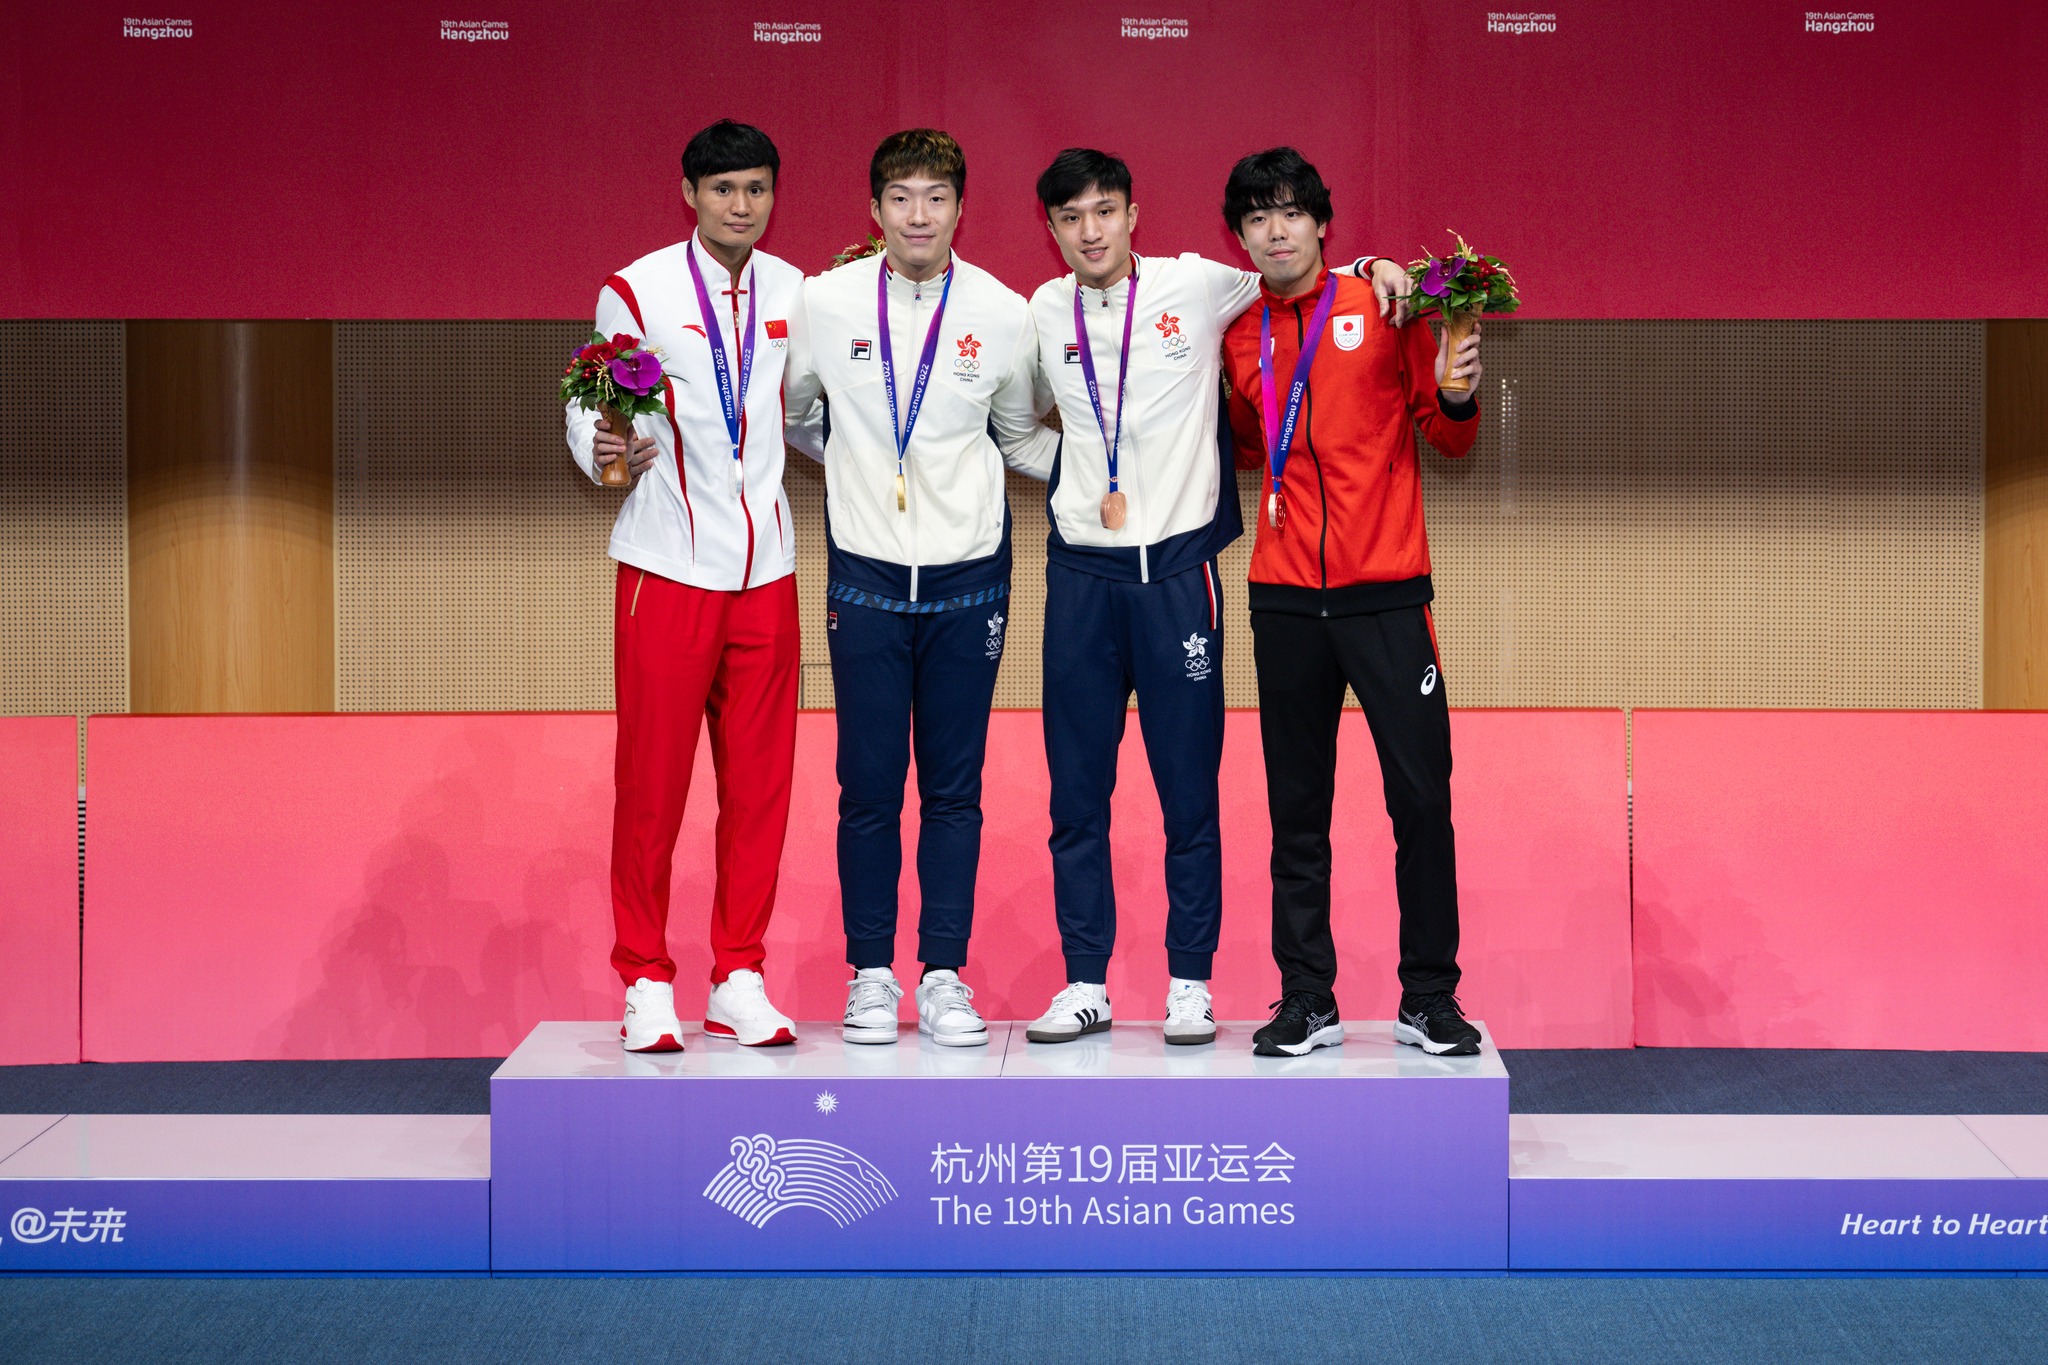 張家朗(左二)在杭州第19屆亞運會的男子個人花劍項目勇奪金牌，他的隊友蔡俊彥(右二)亦奪得銅牌。